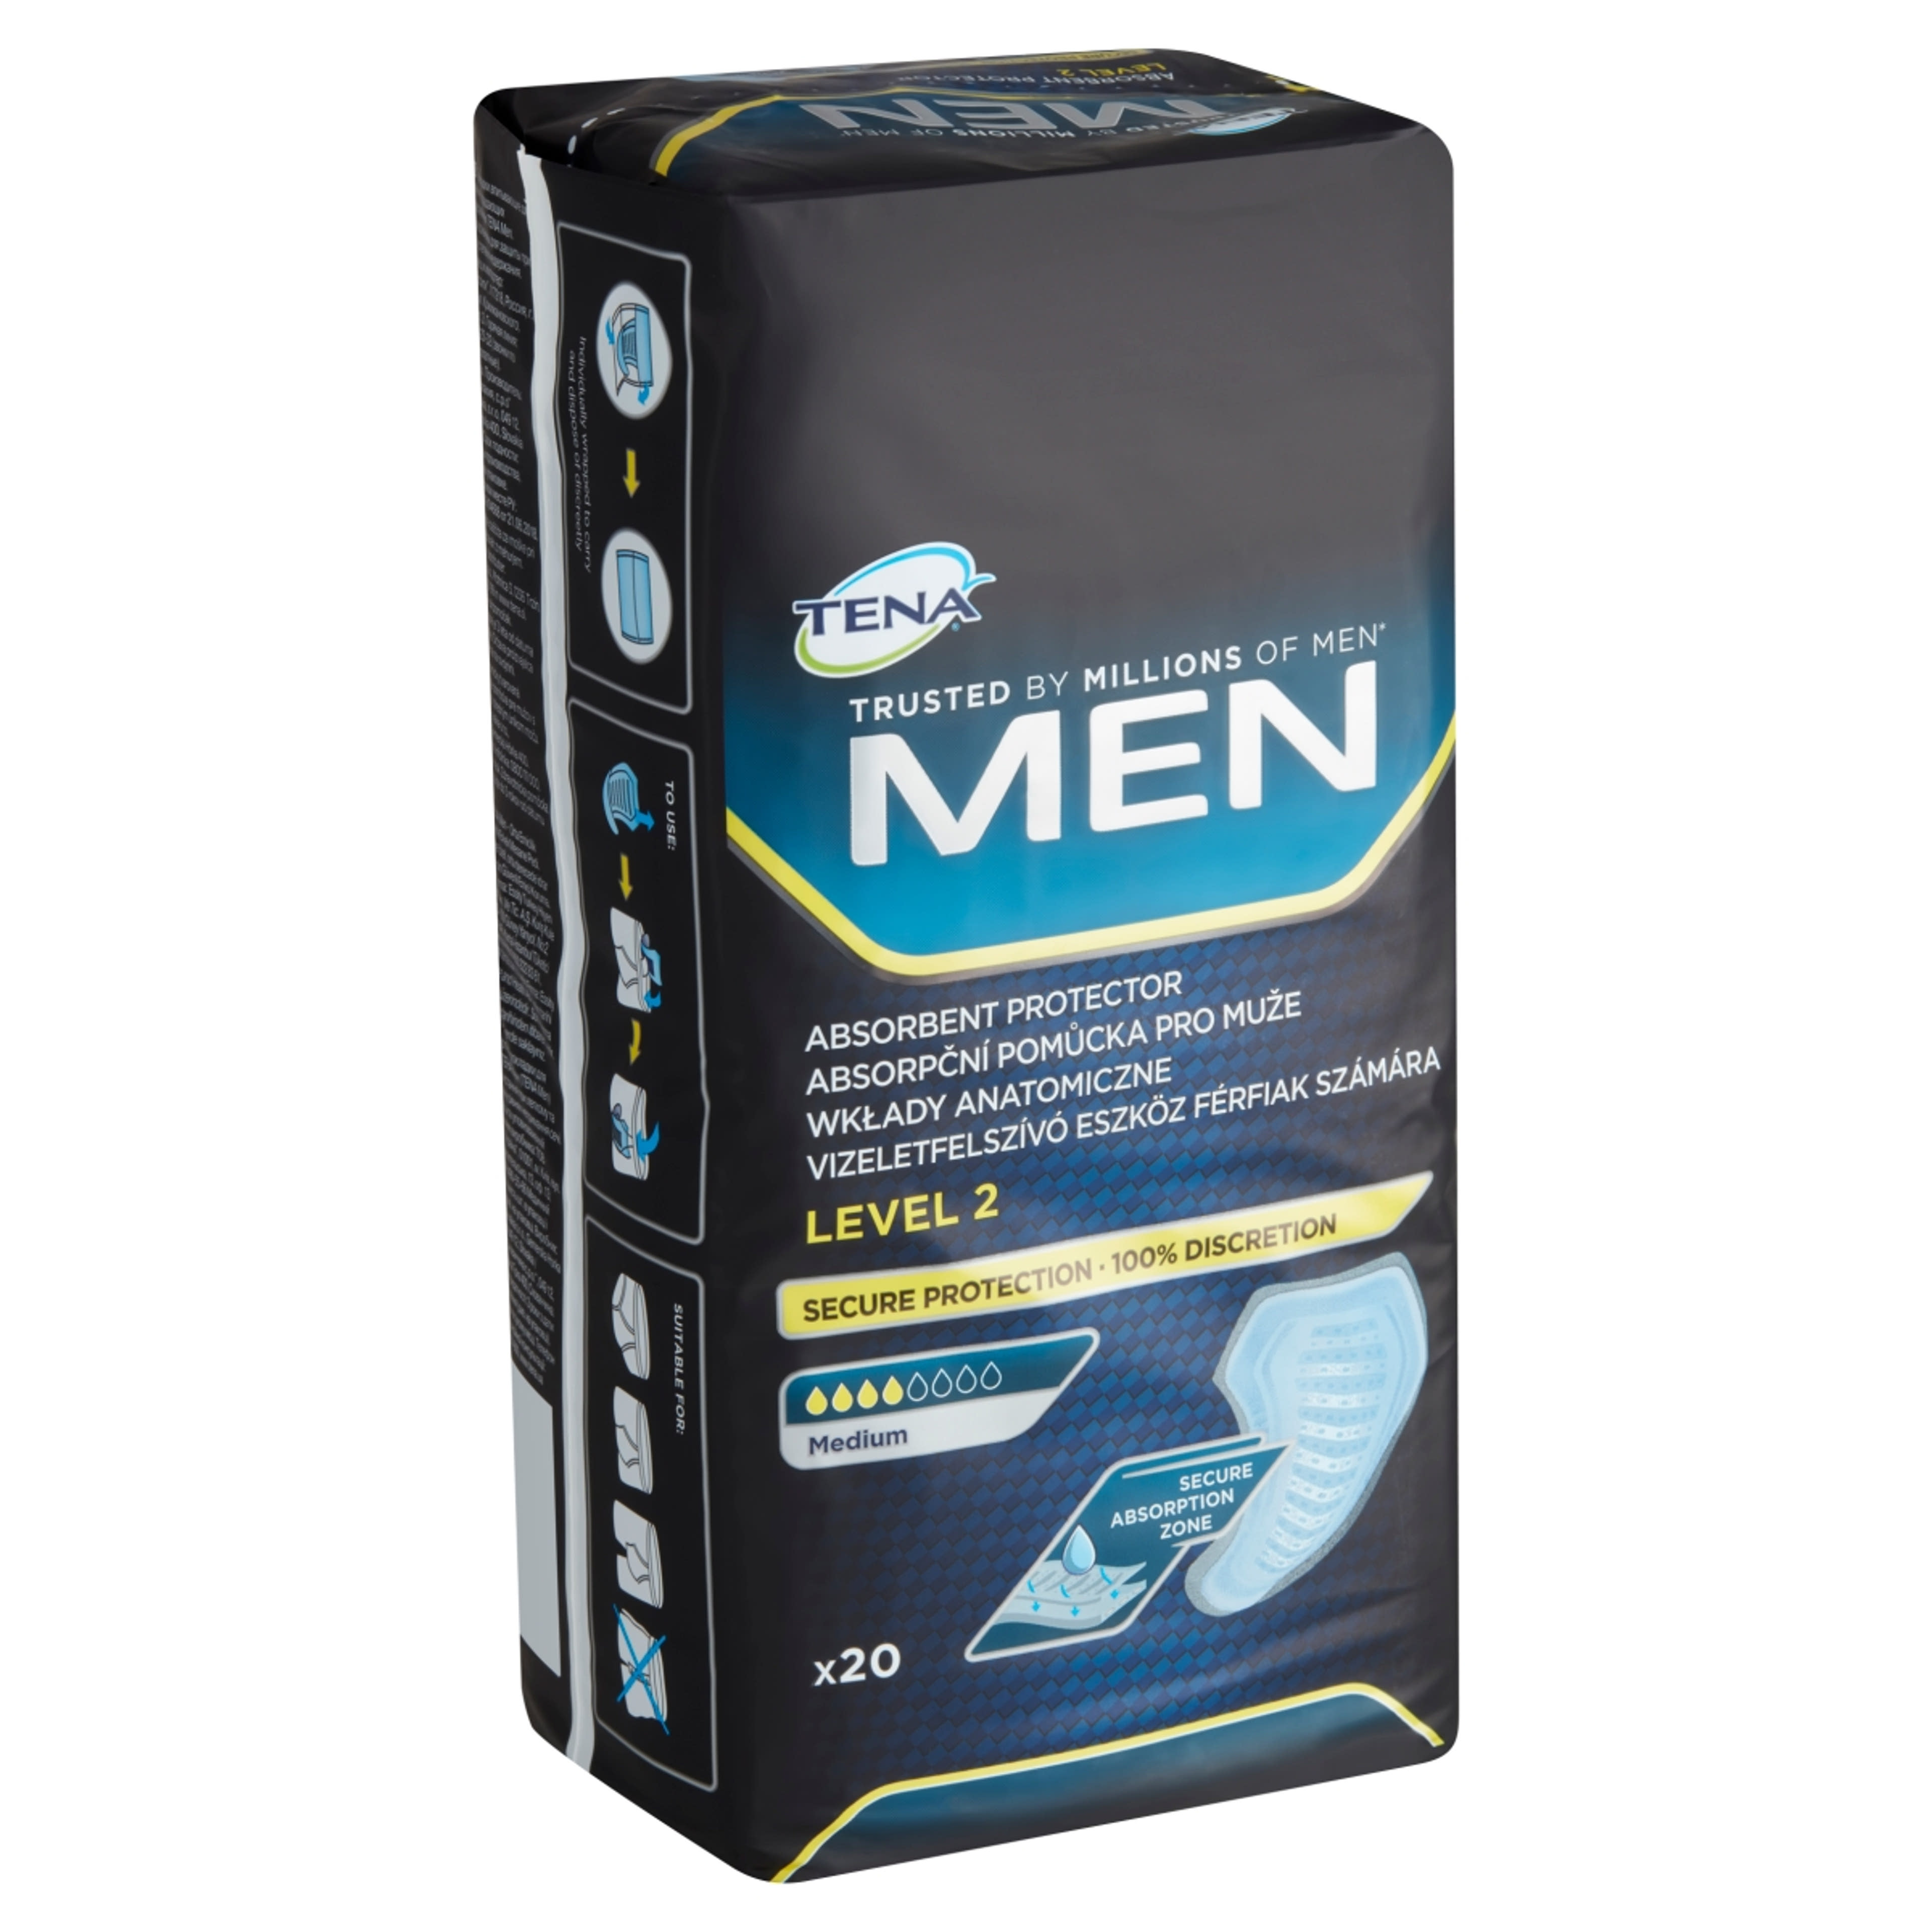 Tena Men Level 2 Medium vizeletfelszívó eszköz férfiak számára - 20 db-2